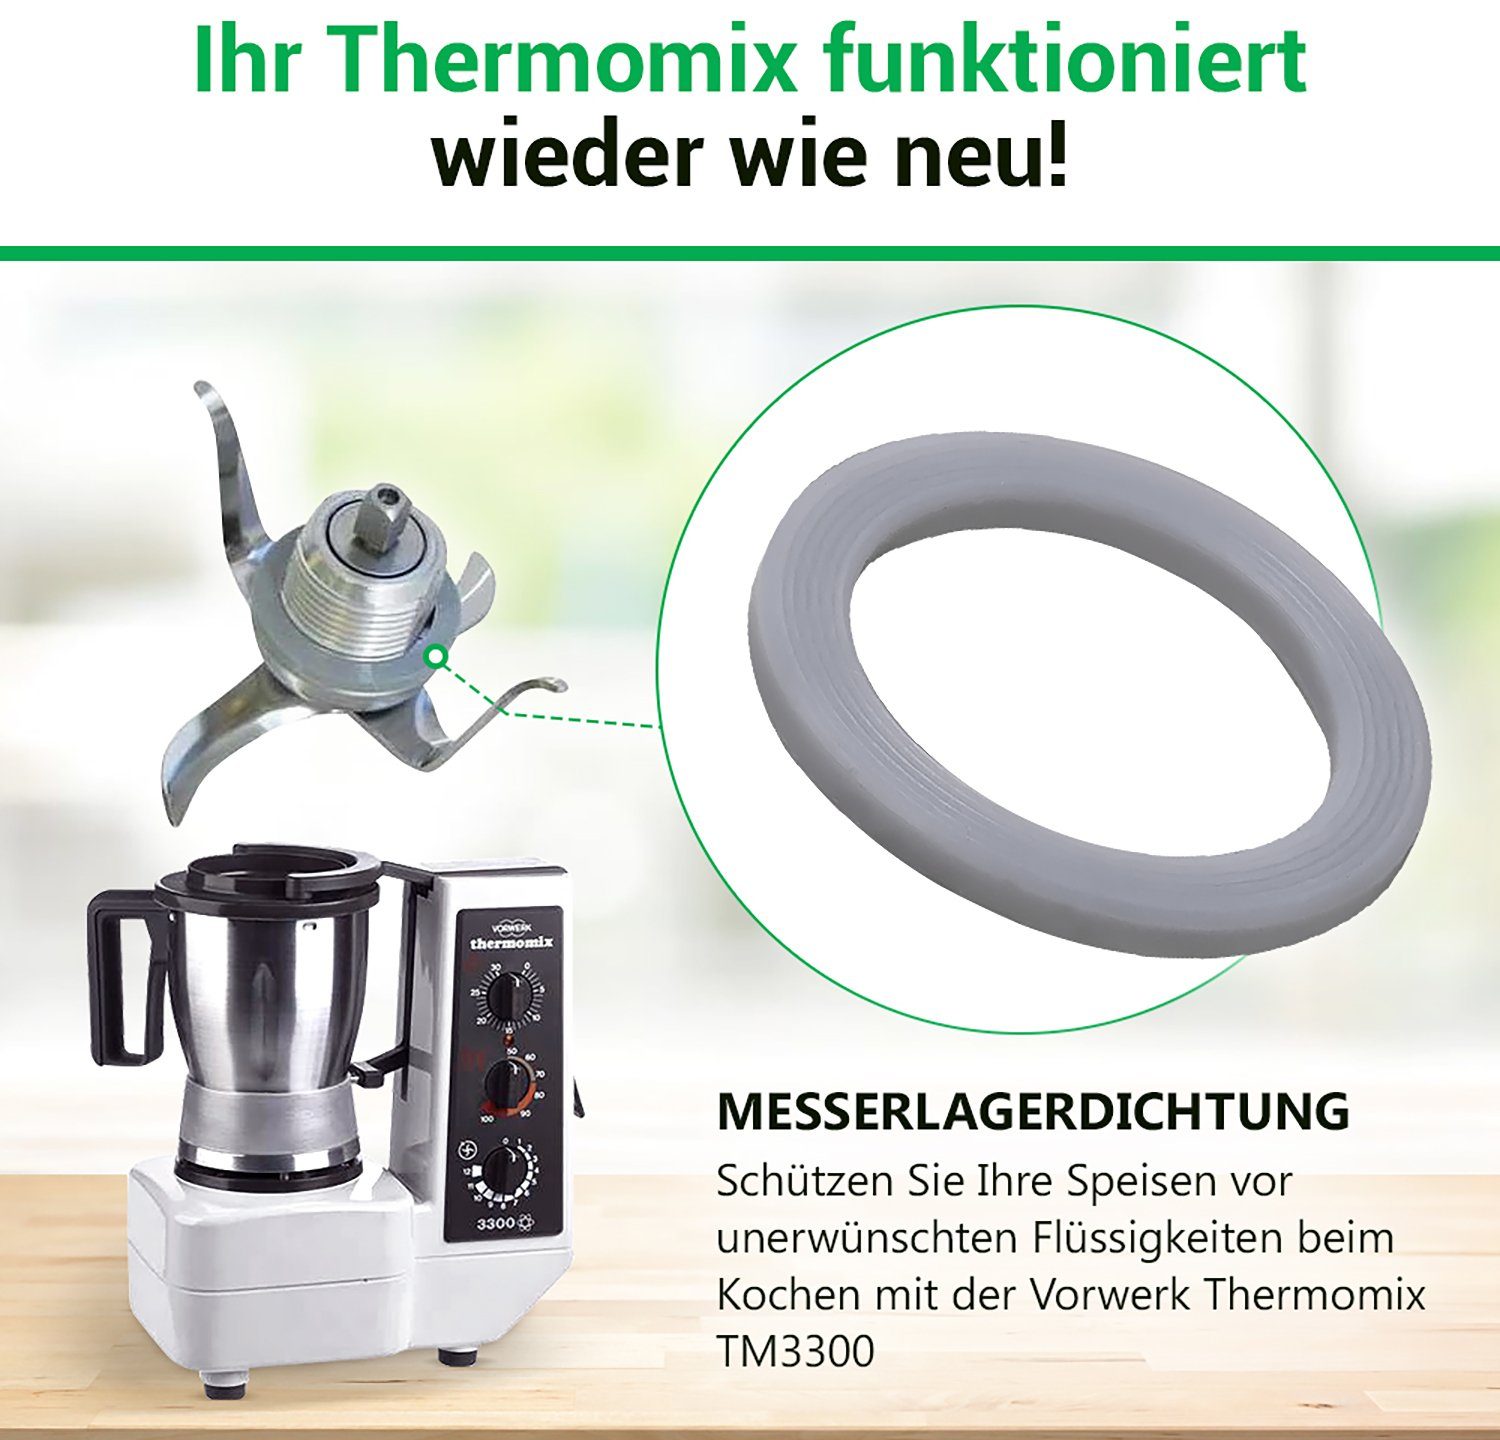 Dichtring für Küchenmaschine Ersatz TM3300 für 3,8 Thermomix Messereinsatz-Dichtung mm, Vorwerk, VIOKS Ø